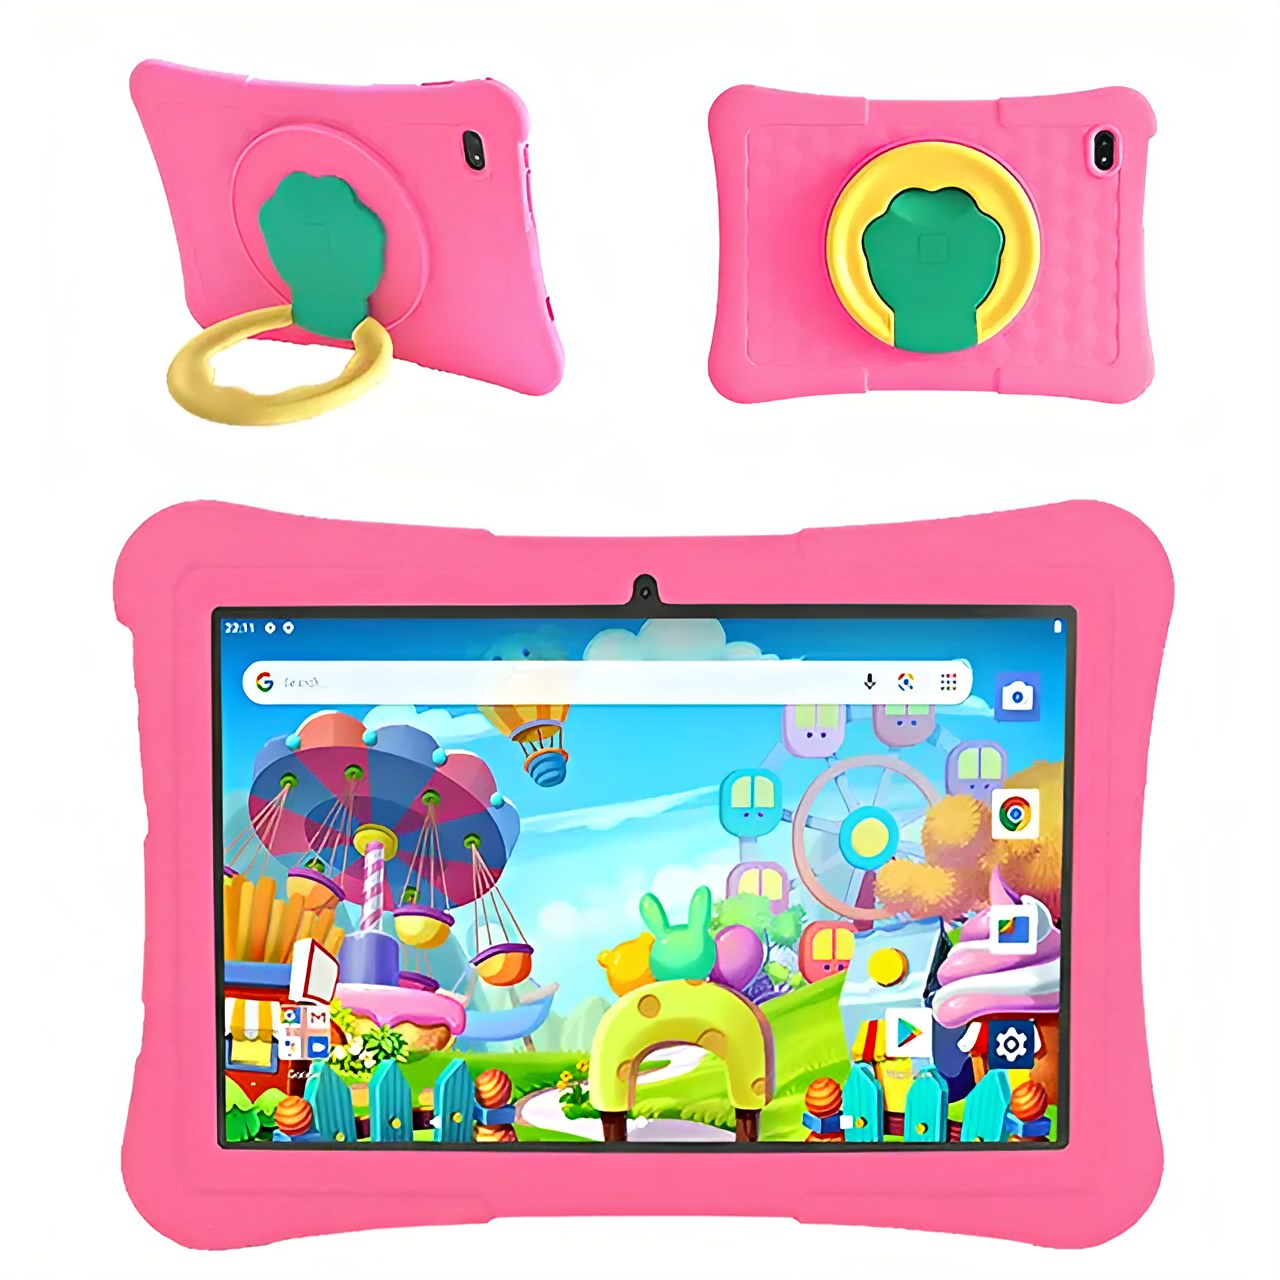 Tablet Kids 10.1" HD Veidoo